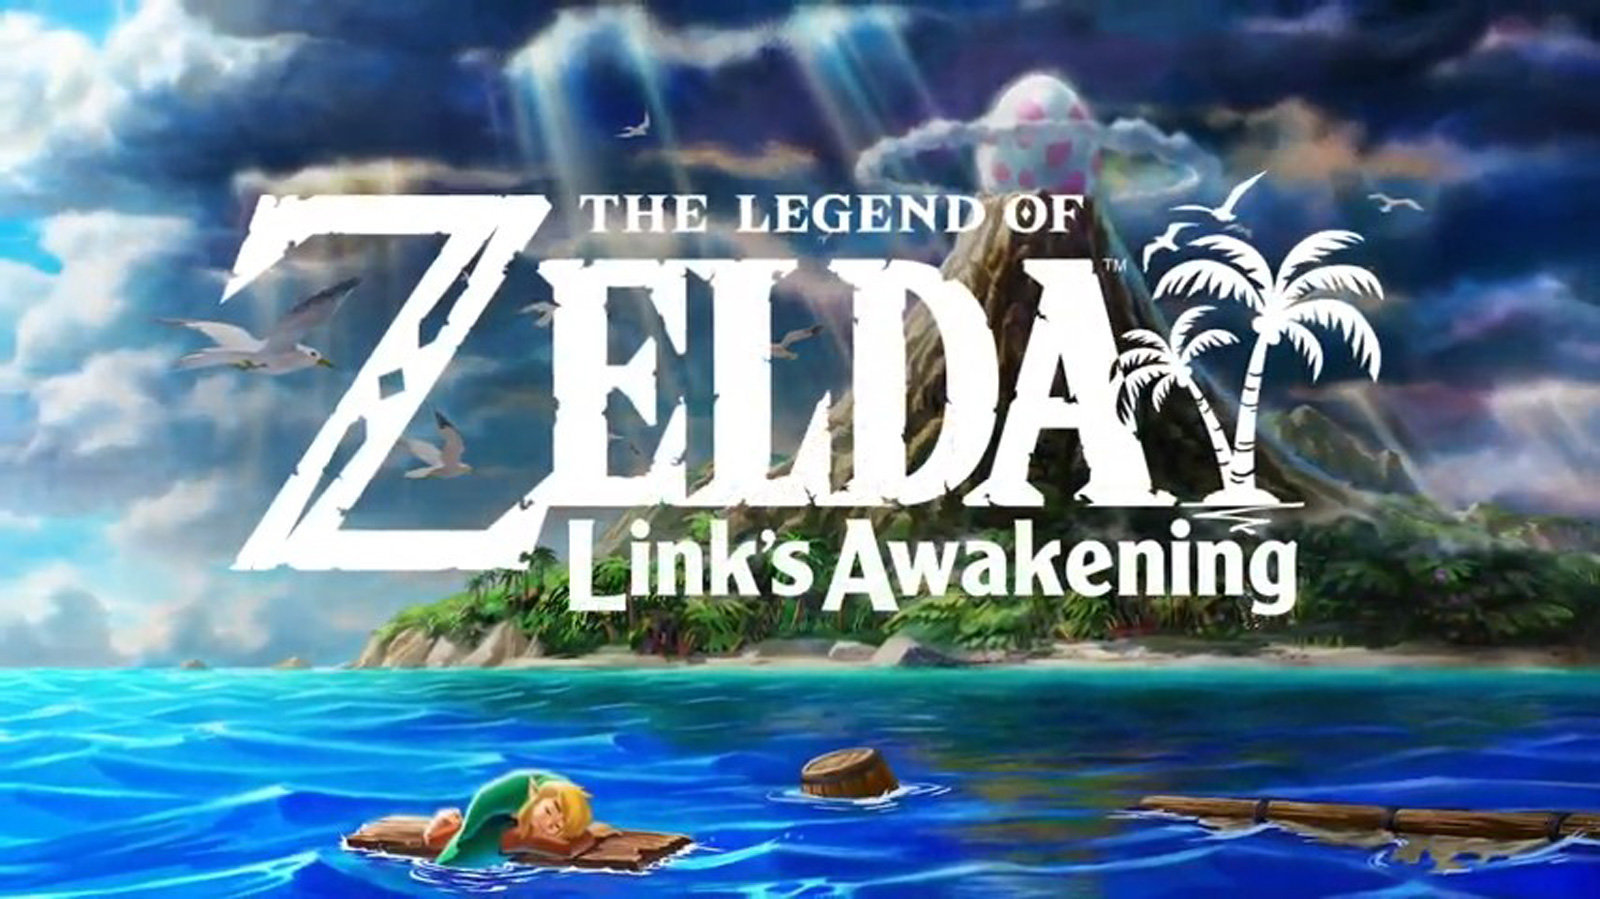 The Legend Of Zelda: Link Awakening